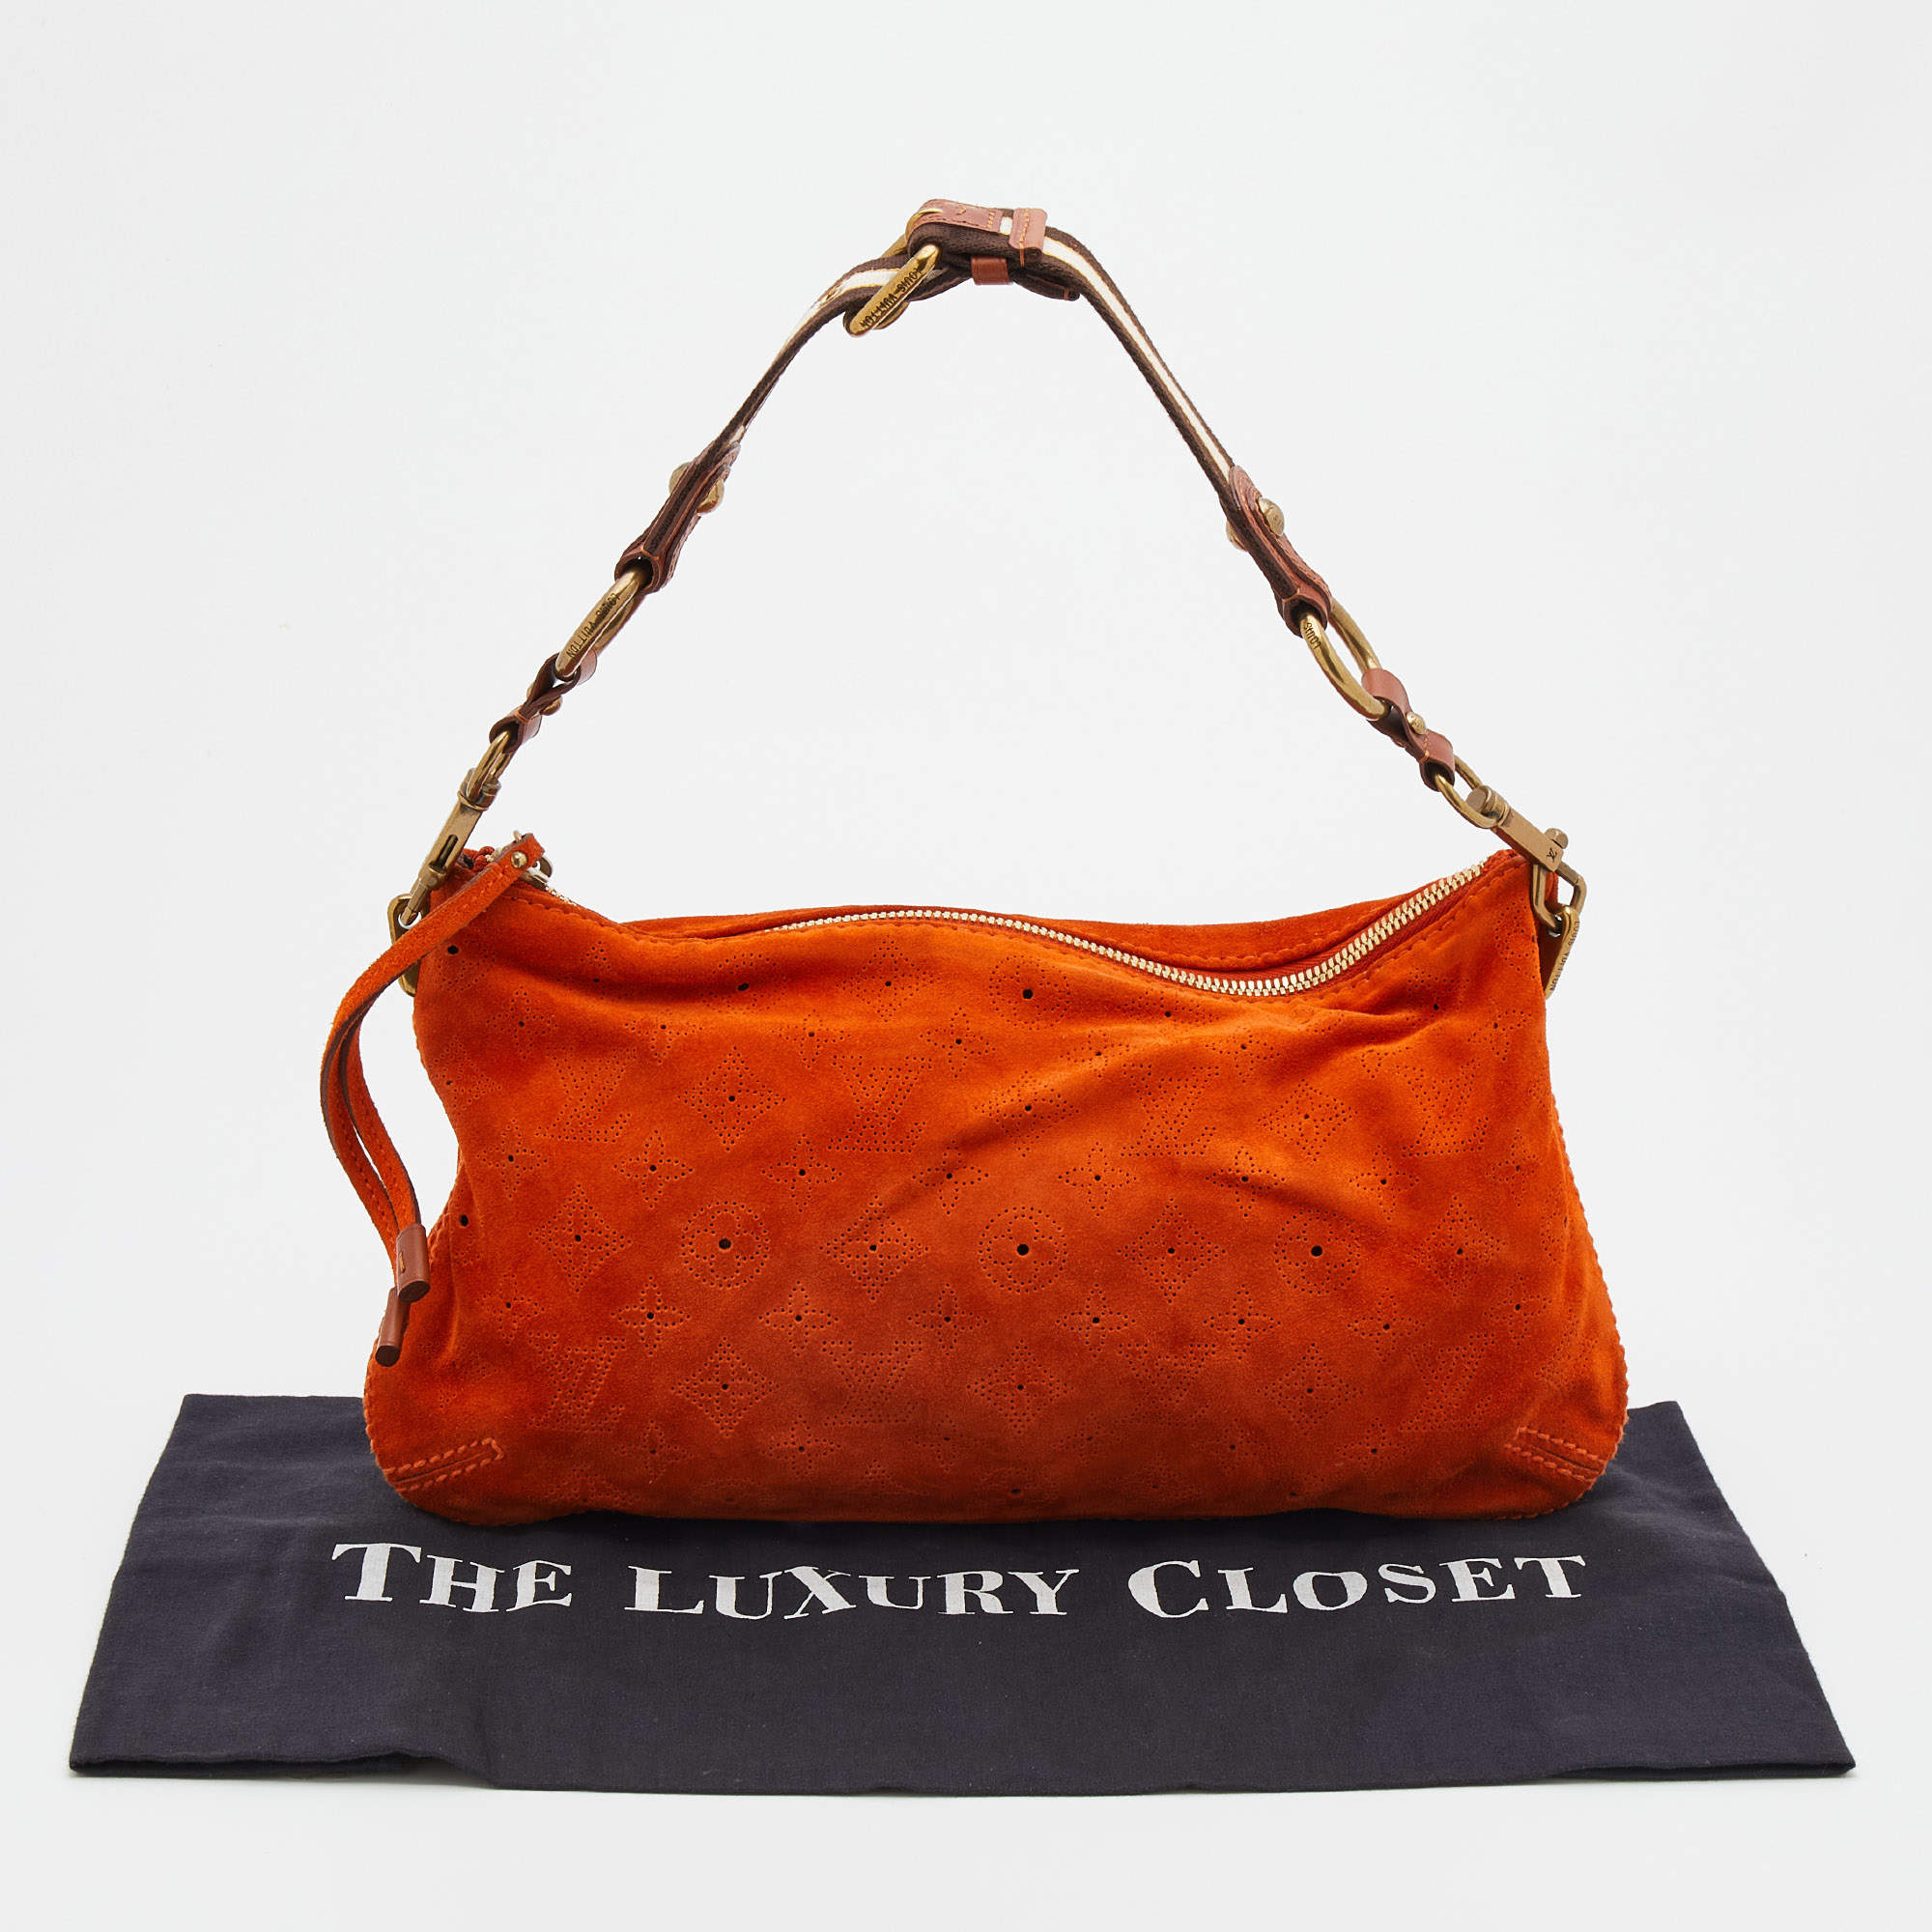 Louis Vuitton - Hide & Seek Bag - Orange Minnesota - Leather - Women - Luxury